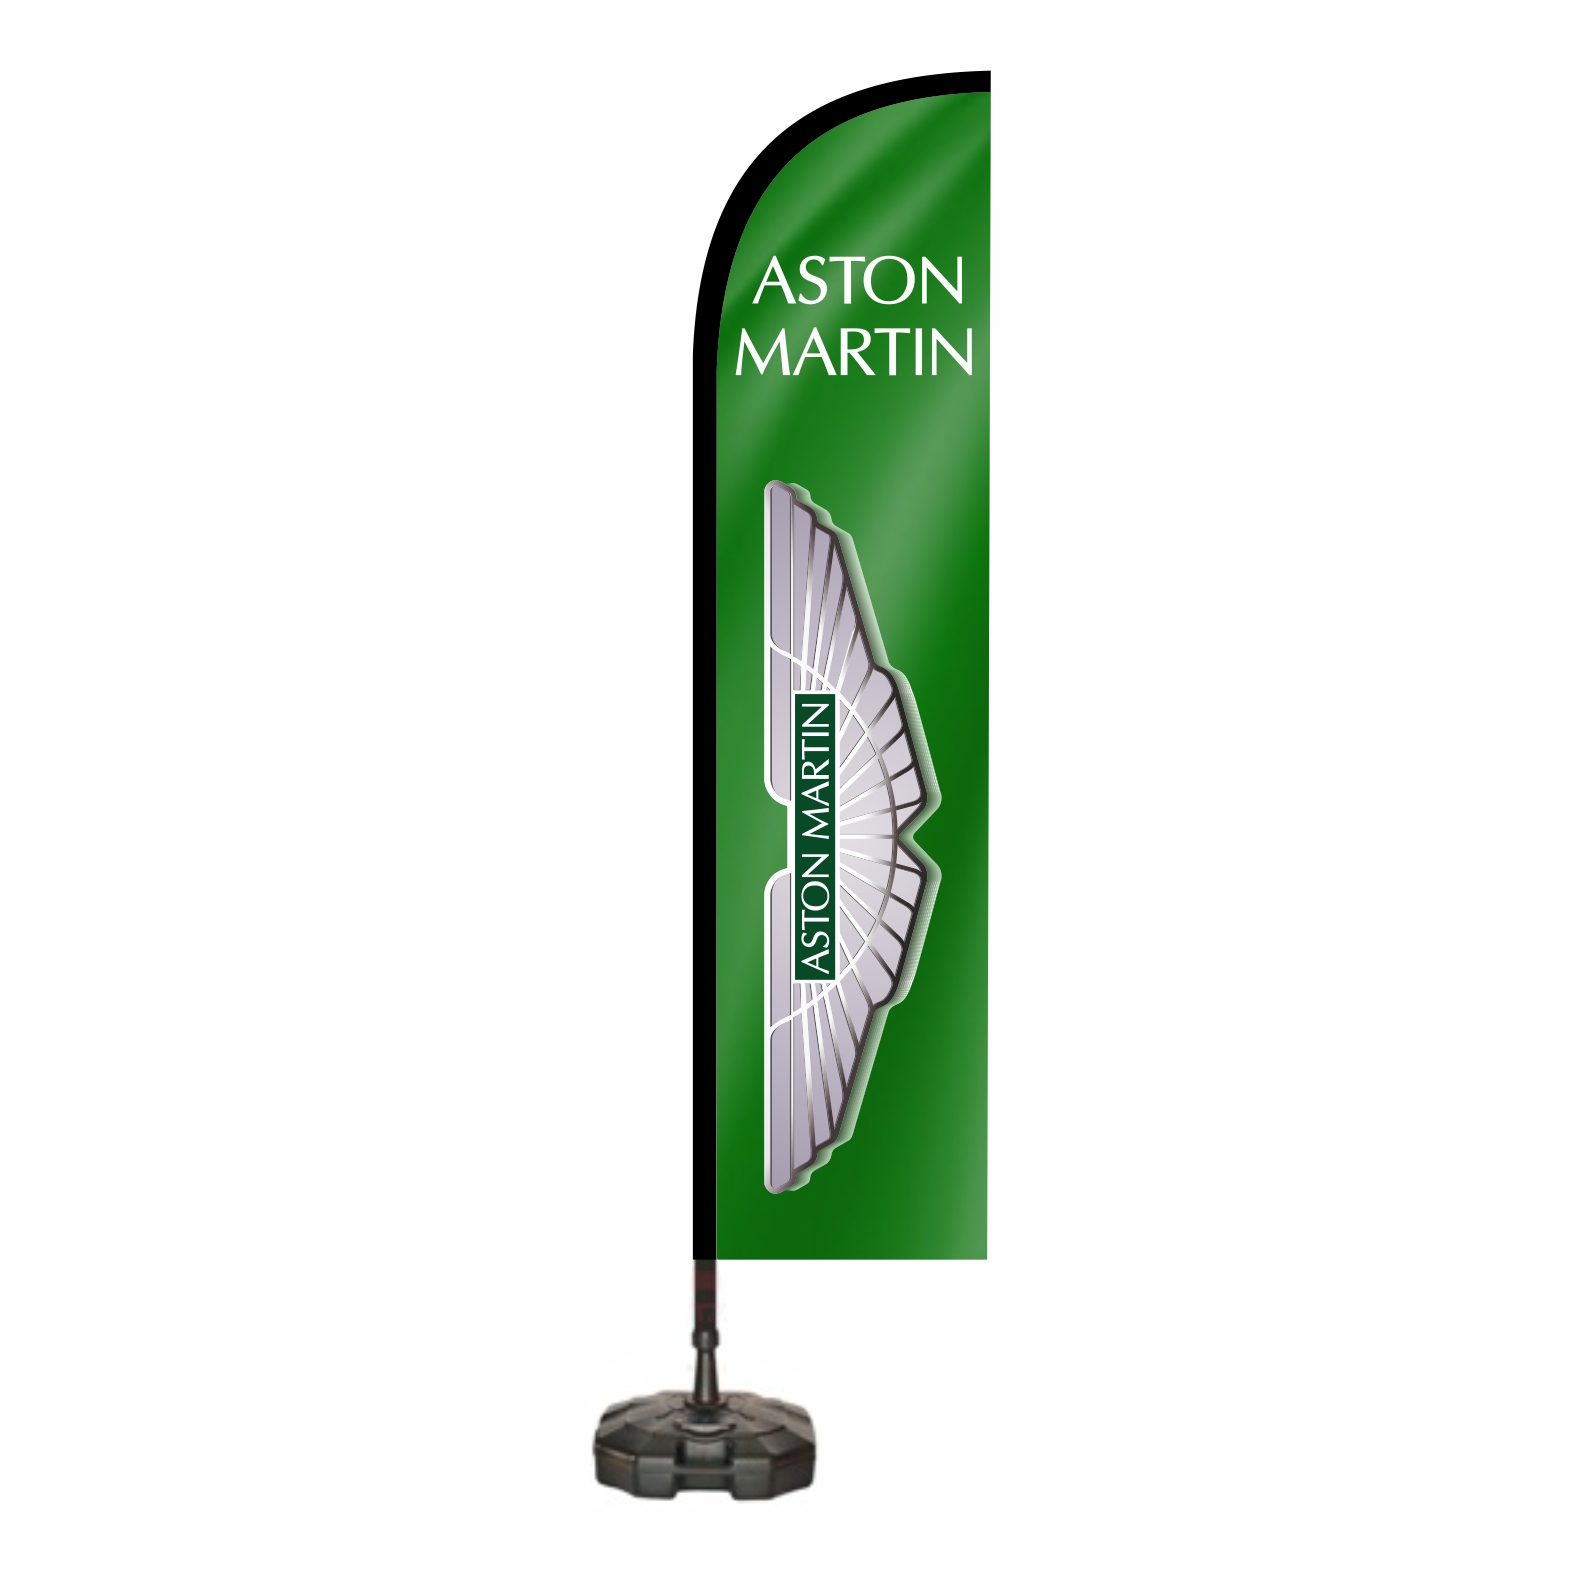 Aston Martin Reklam Bayra Yapan Firmalar